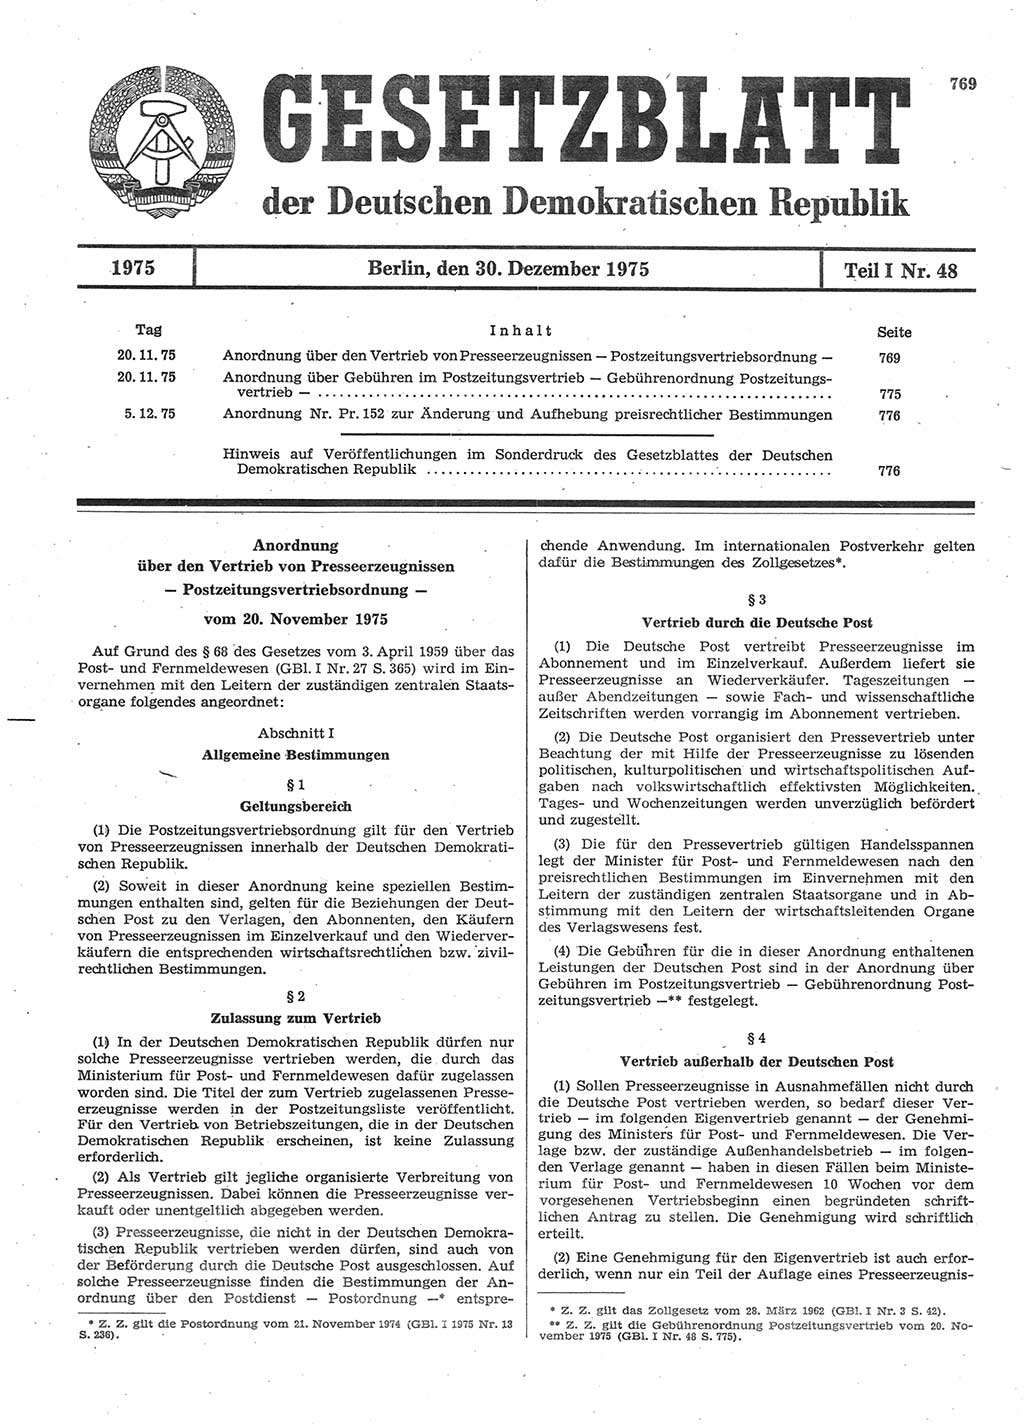 Gesetzblatt (GBl.) der Deutschen Demokratischen Republik (DDR) Teil Ⅰ 1975, Seite 769 (GBl. DDR Ⅰ 1975, S. 769)